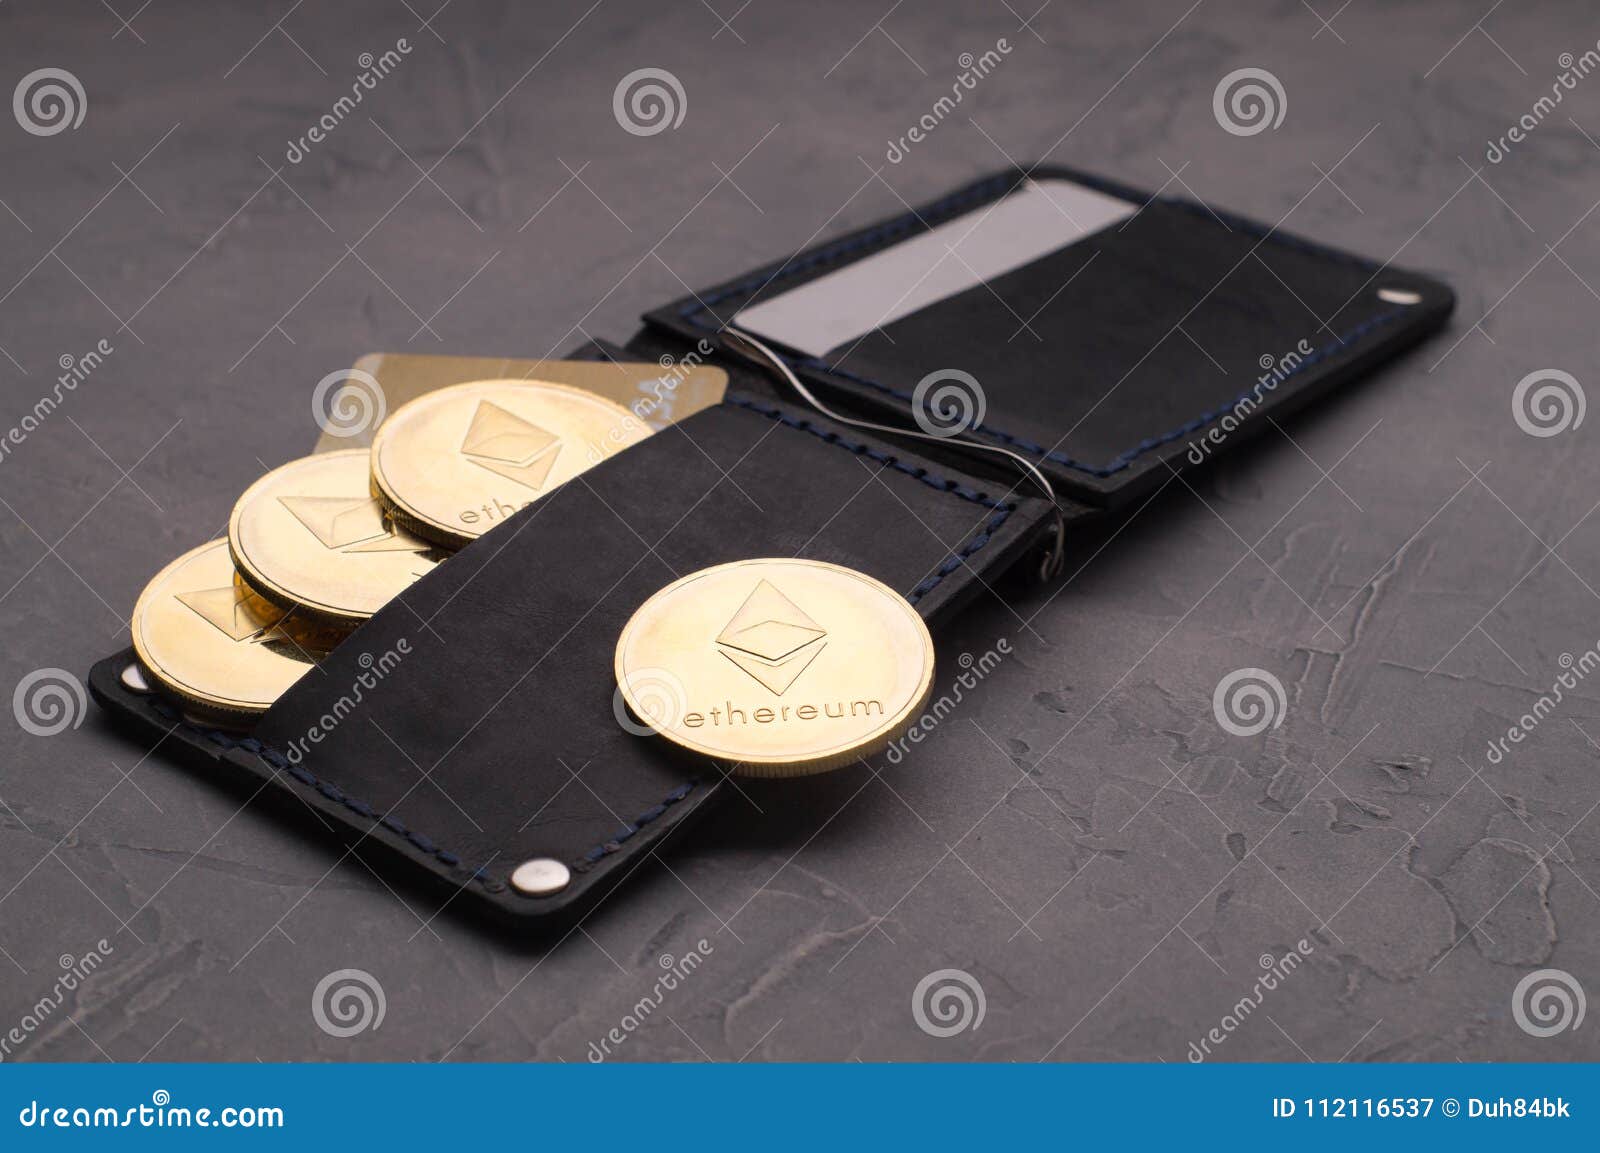 coin purse crypto